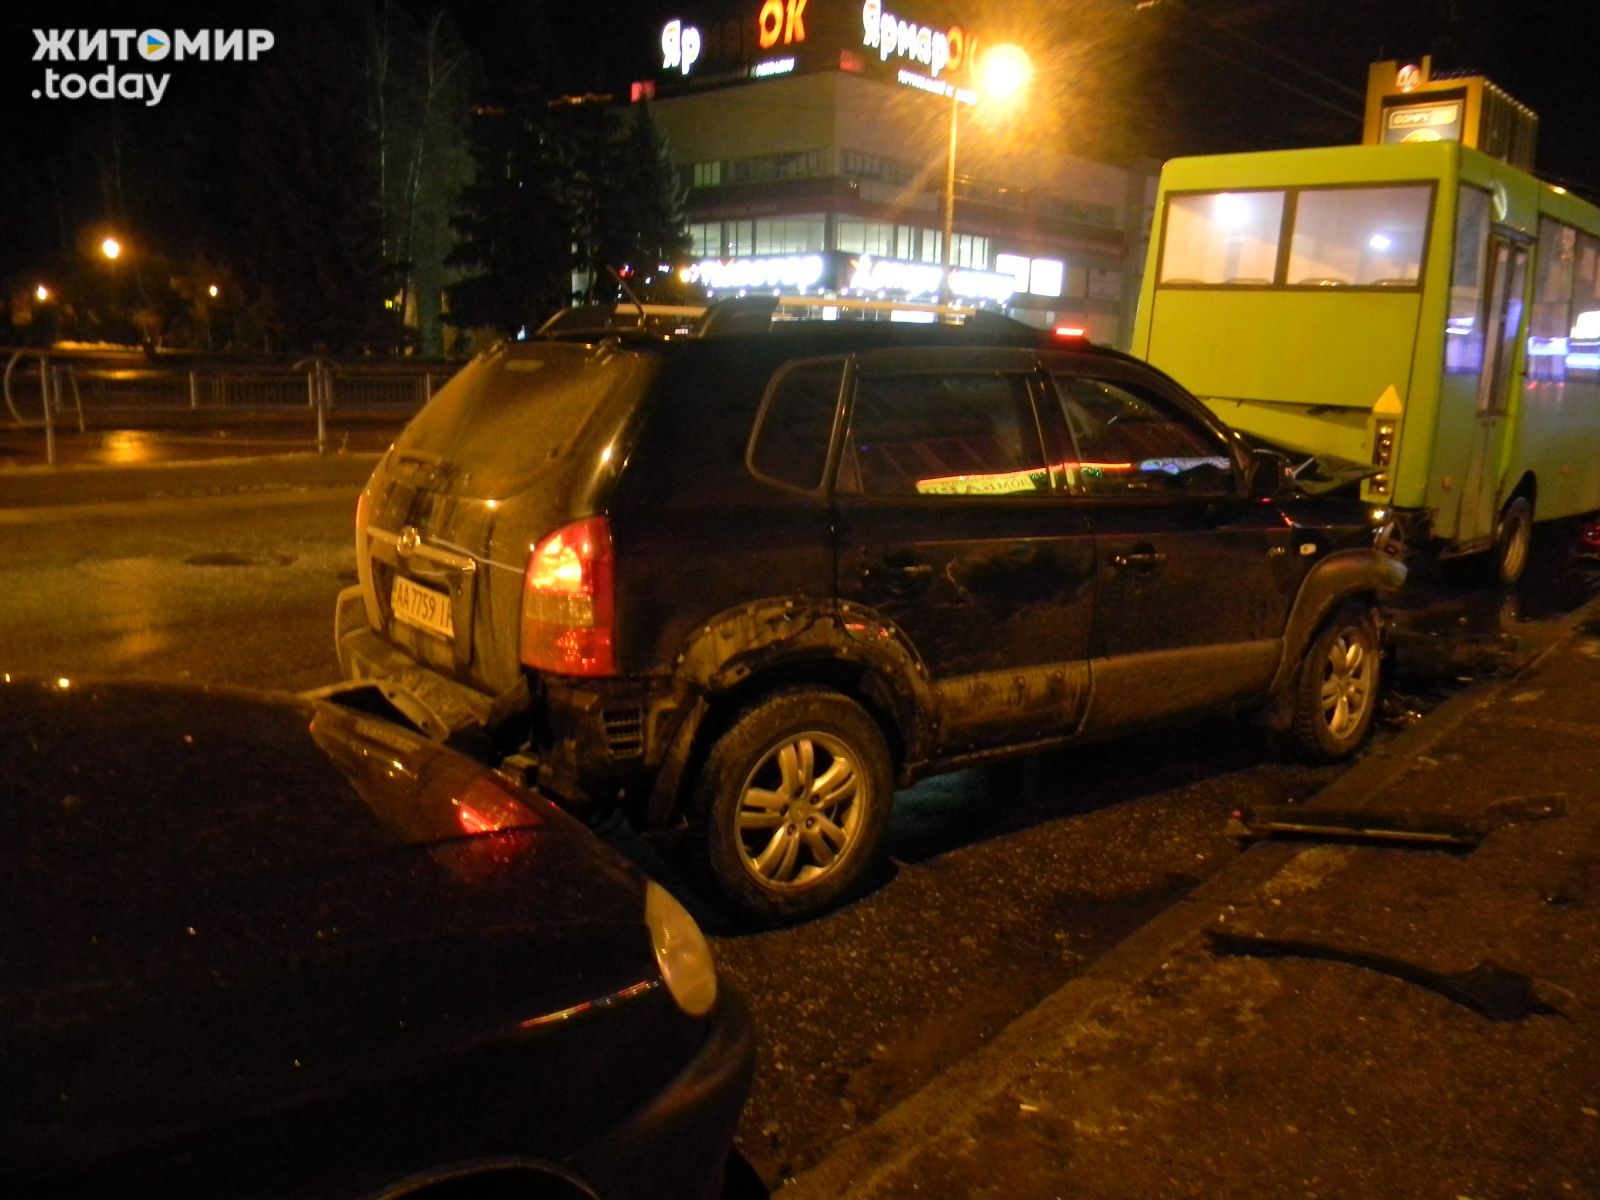 Надзвичайні події: Вечером в Житомире столкнулись сразу 4 автомобиля. ФОТО